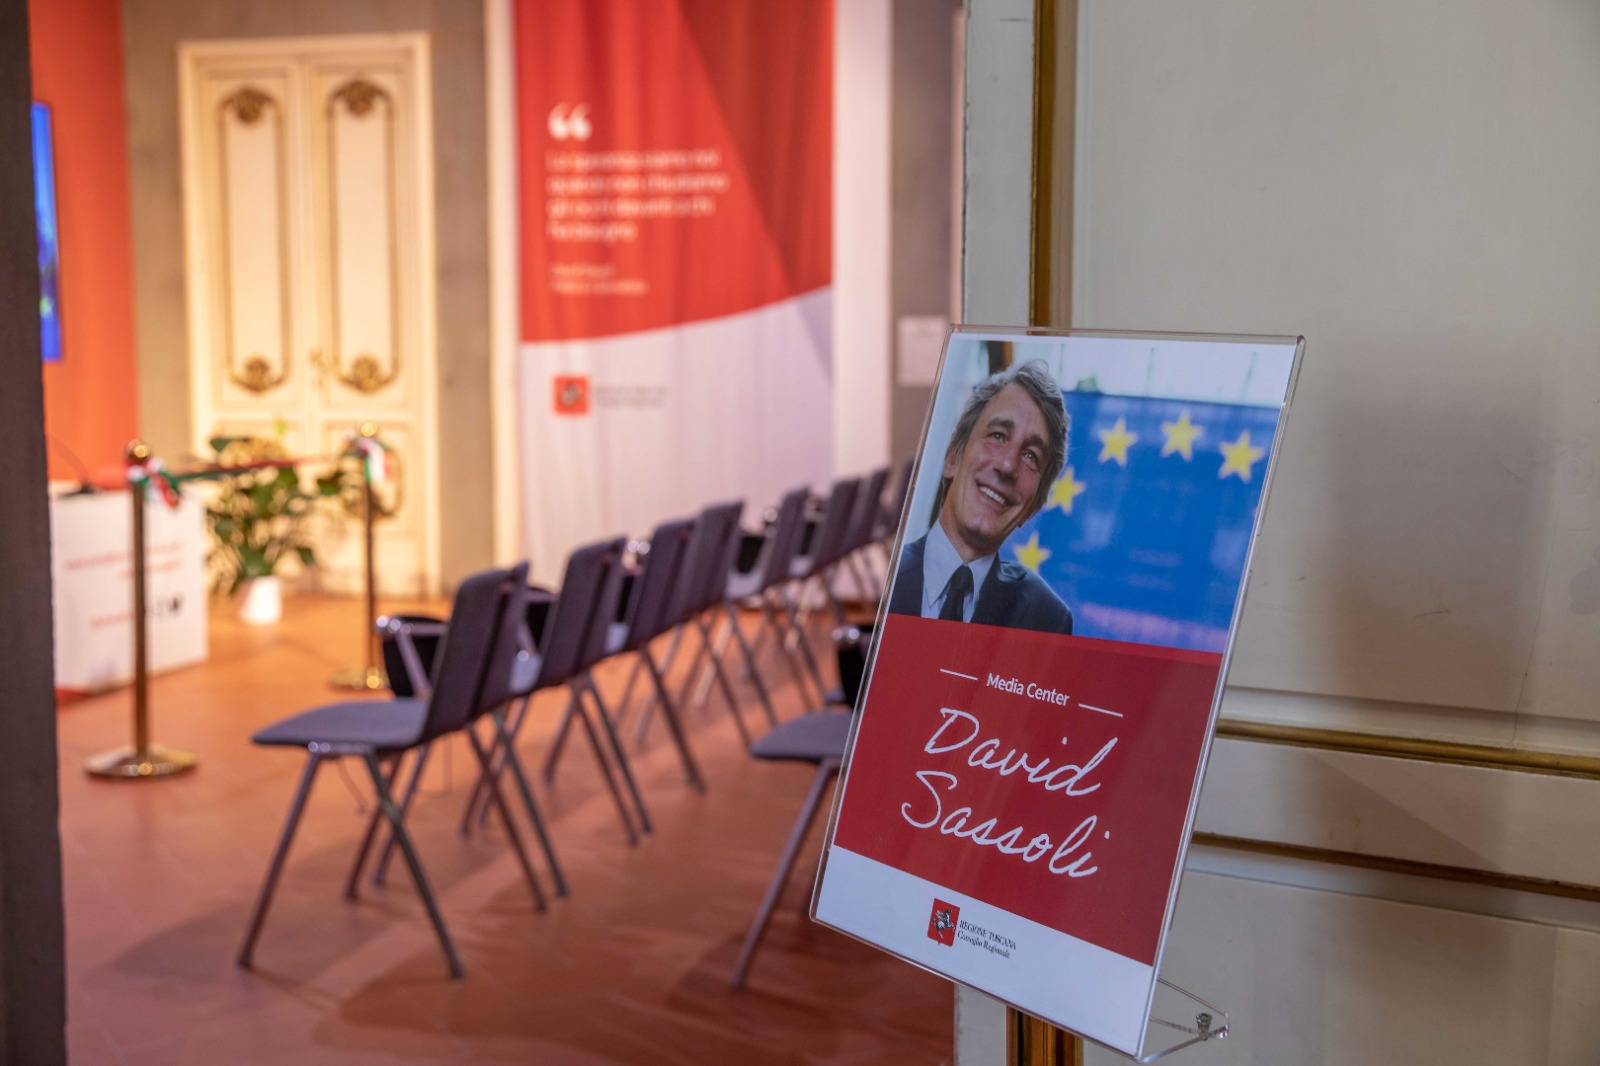 Europa: Pubblicato bando miglior tesi di laurea in memoria di David Sassoli